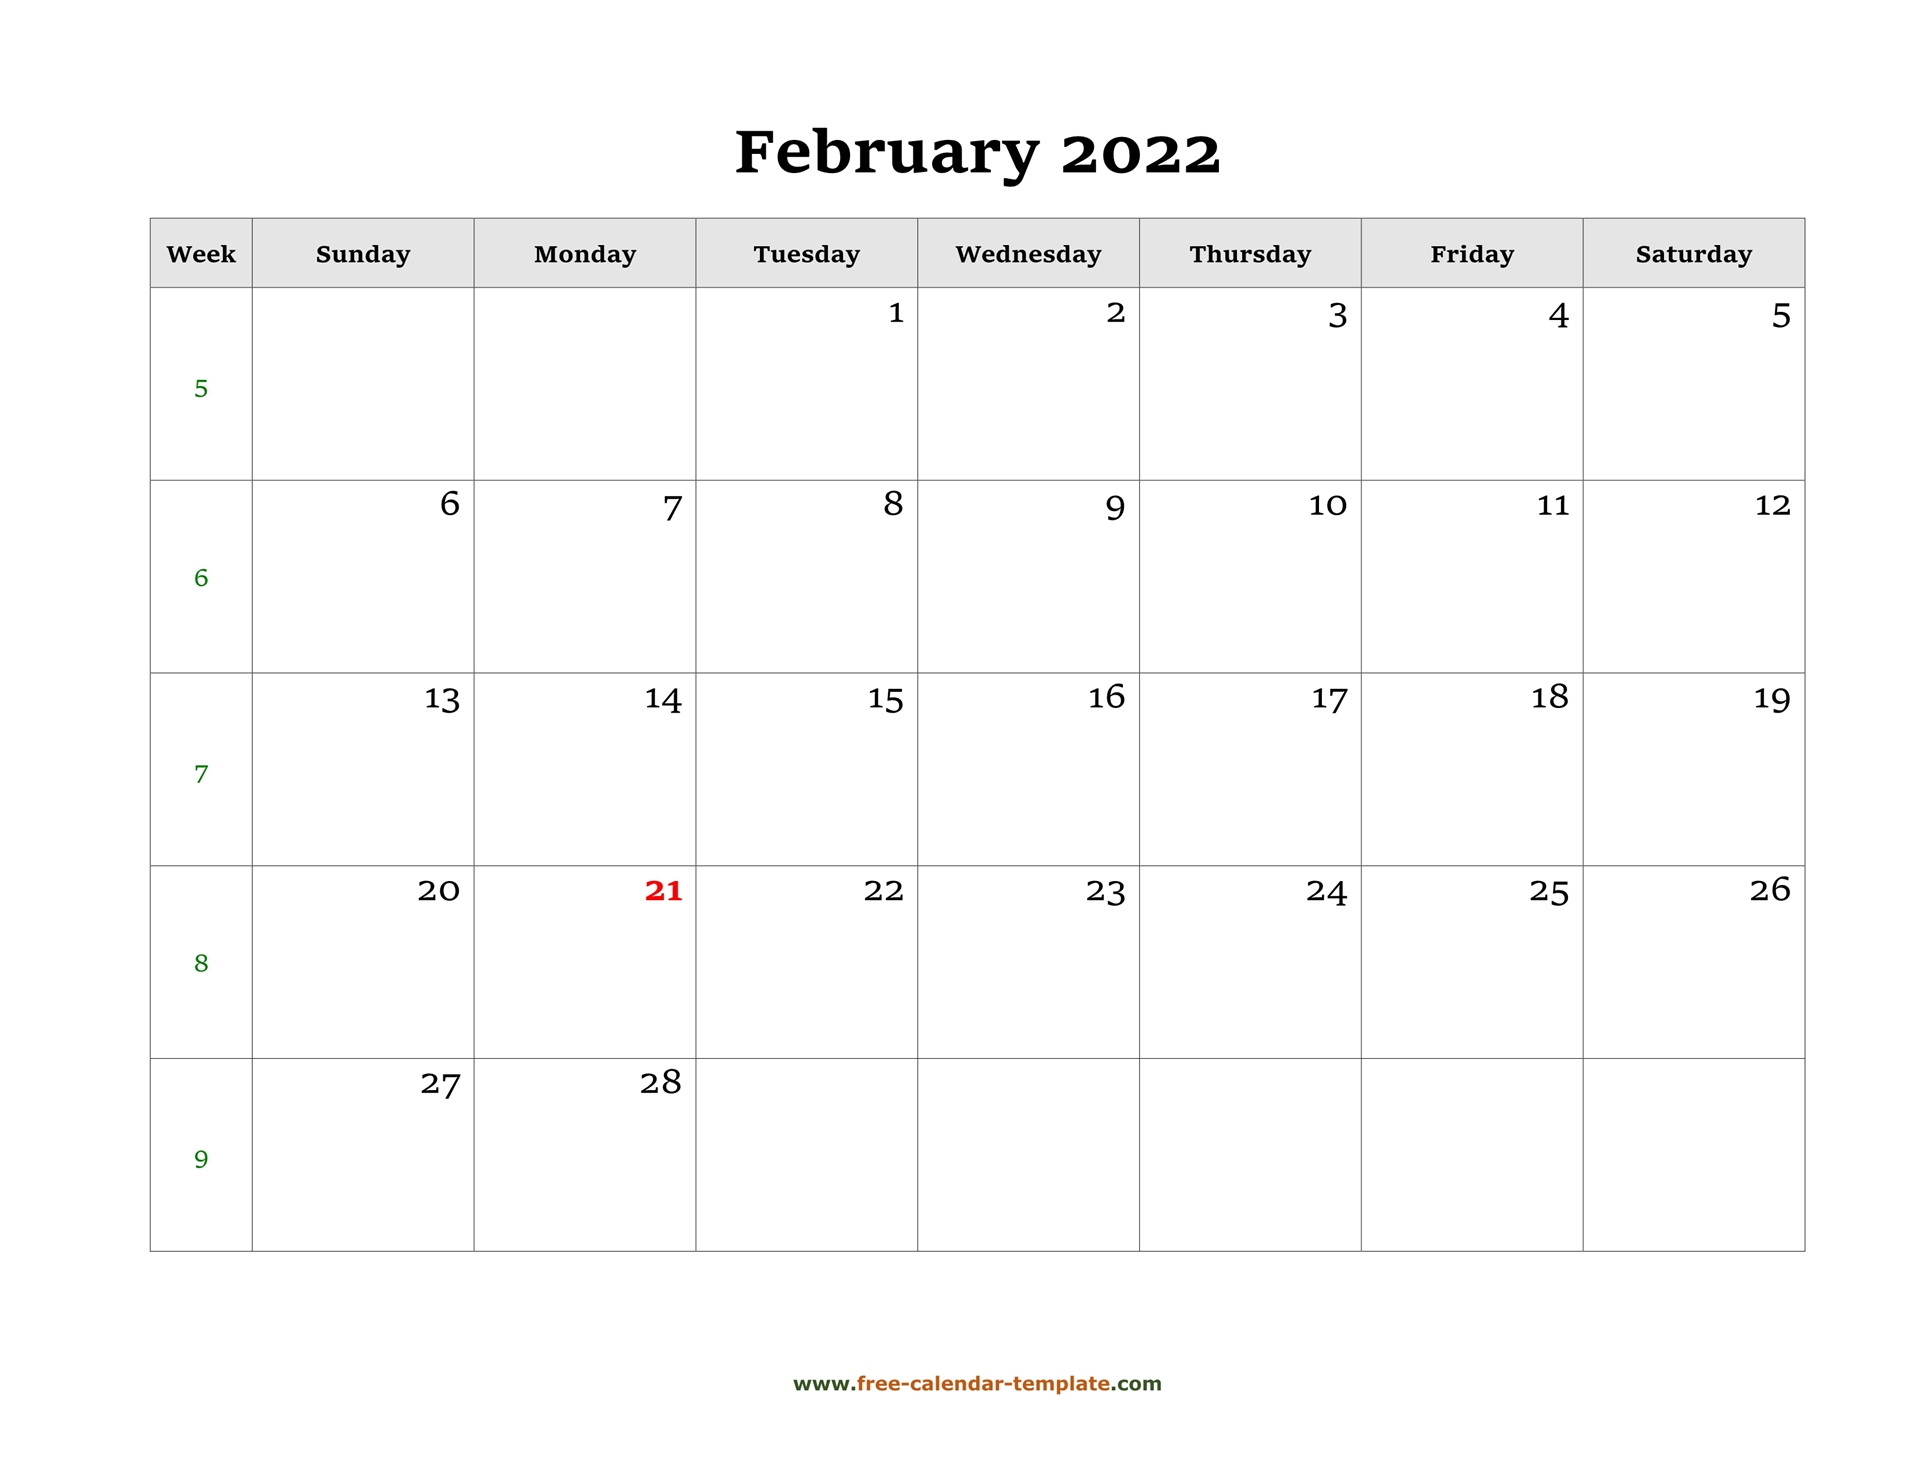 Get February 2022 Calendar Panchang Kannada